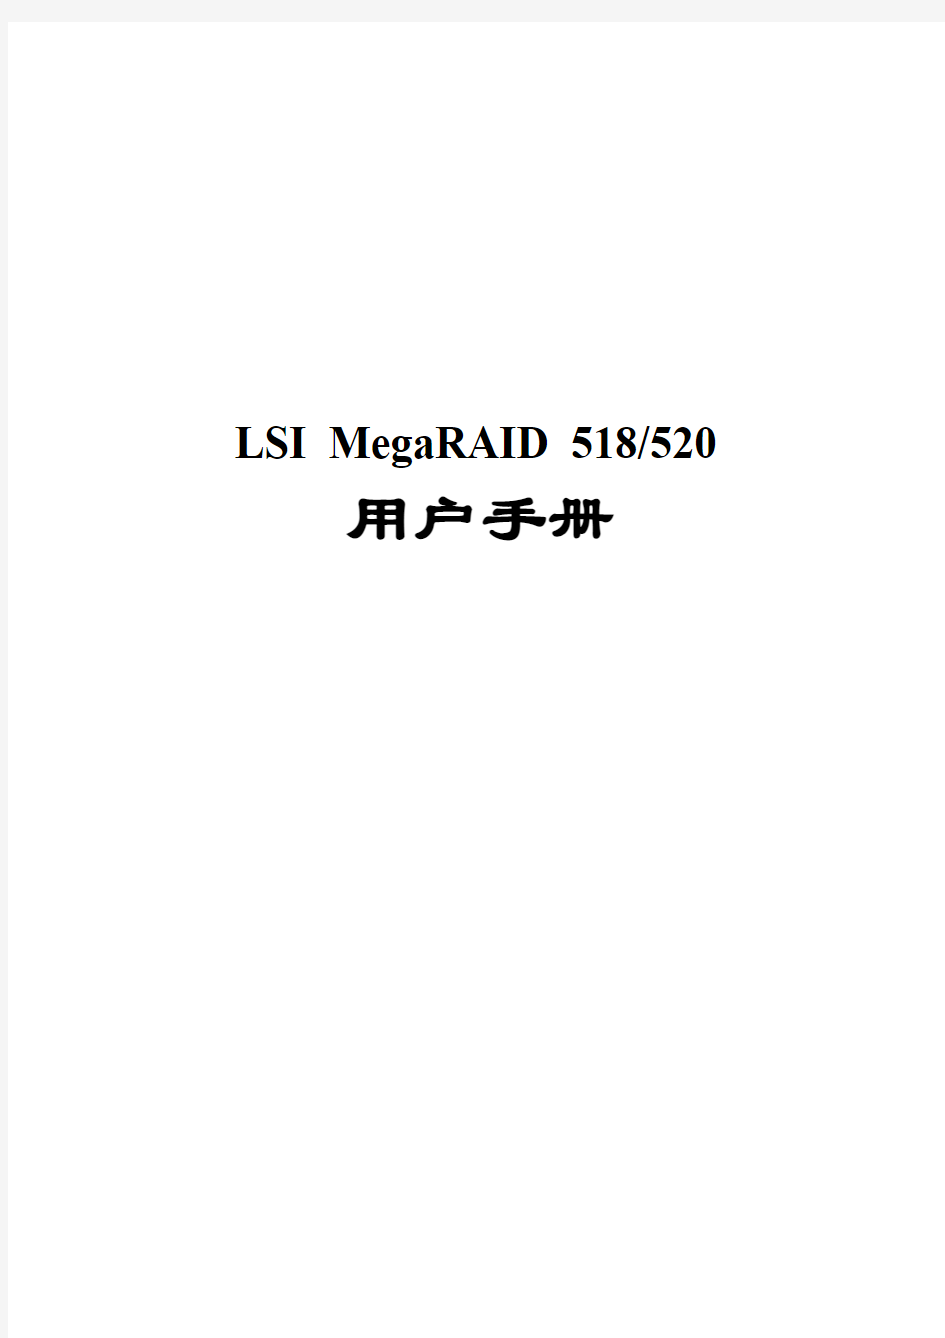 LSIlogic MegaRAID 518&520用户手册v1.0